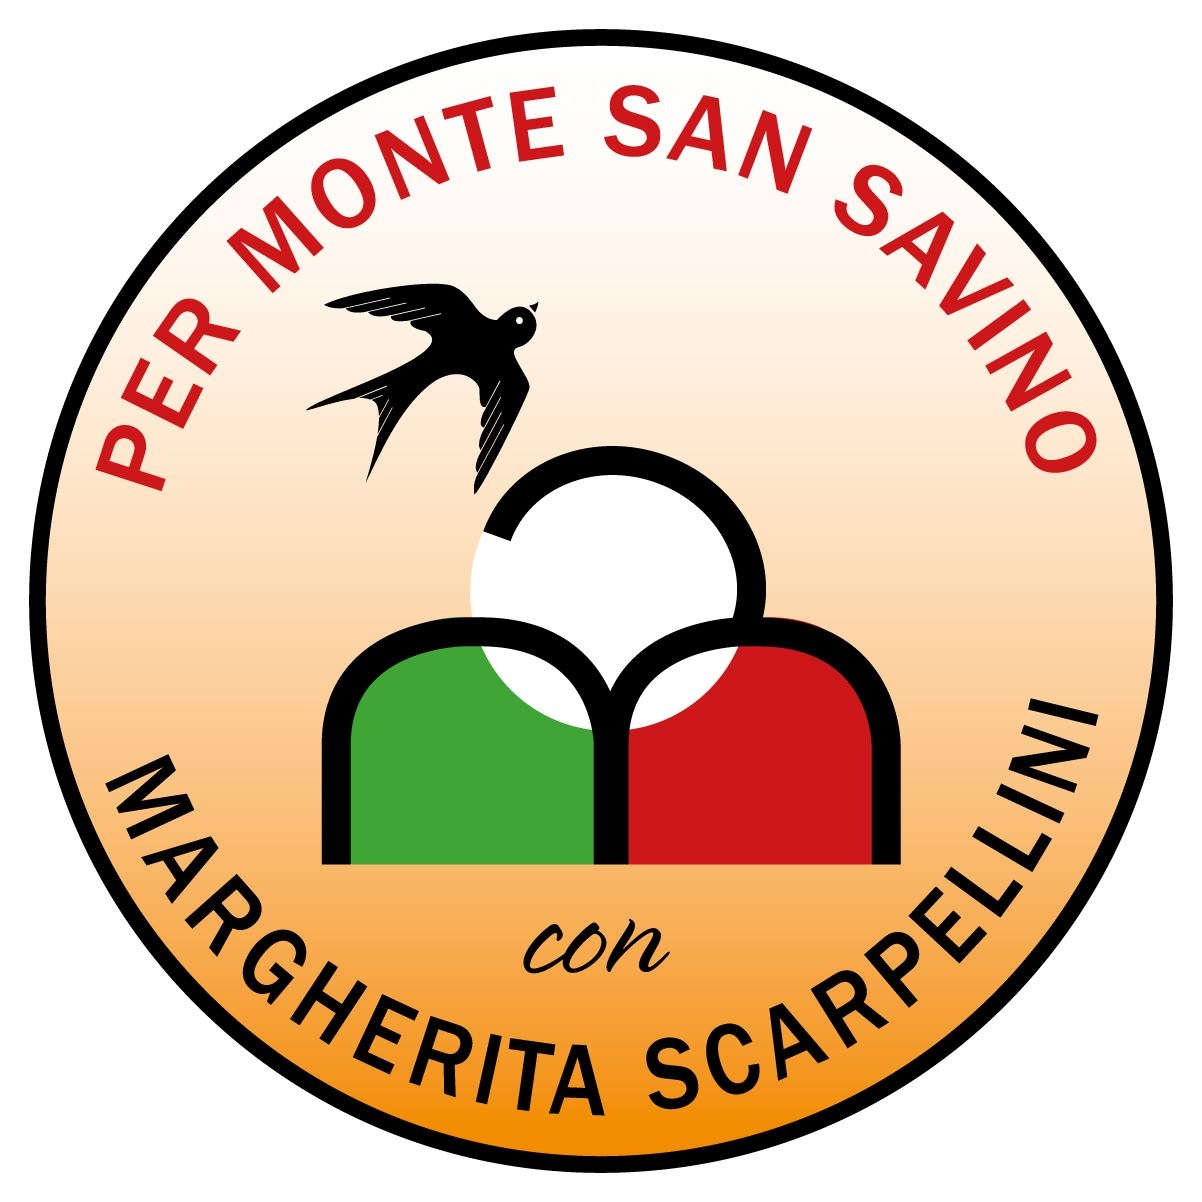 Per Monte San Savino: qualità, idee, volontà, vicini ai cittadini, al servizio di tutti